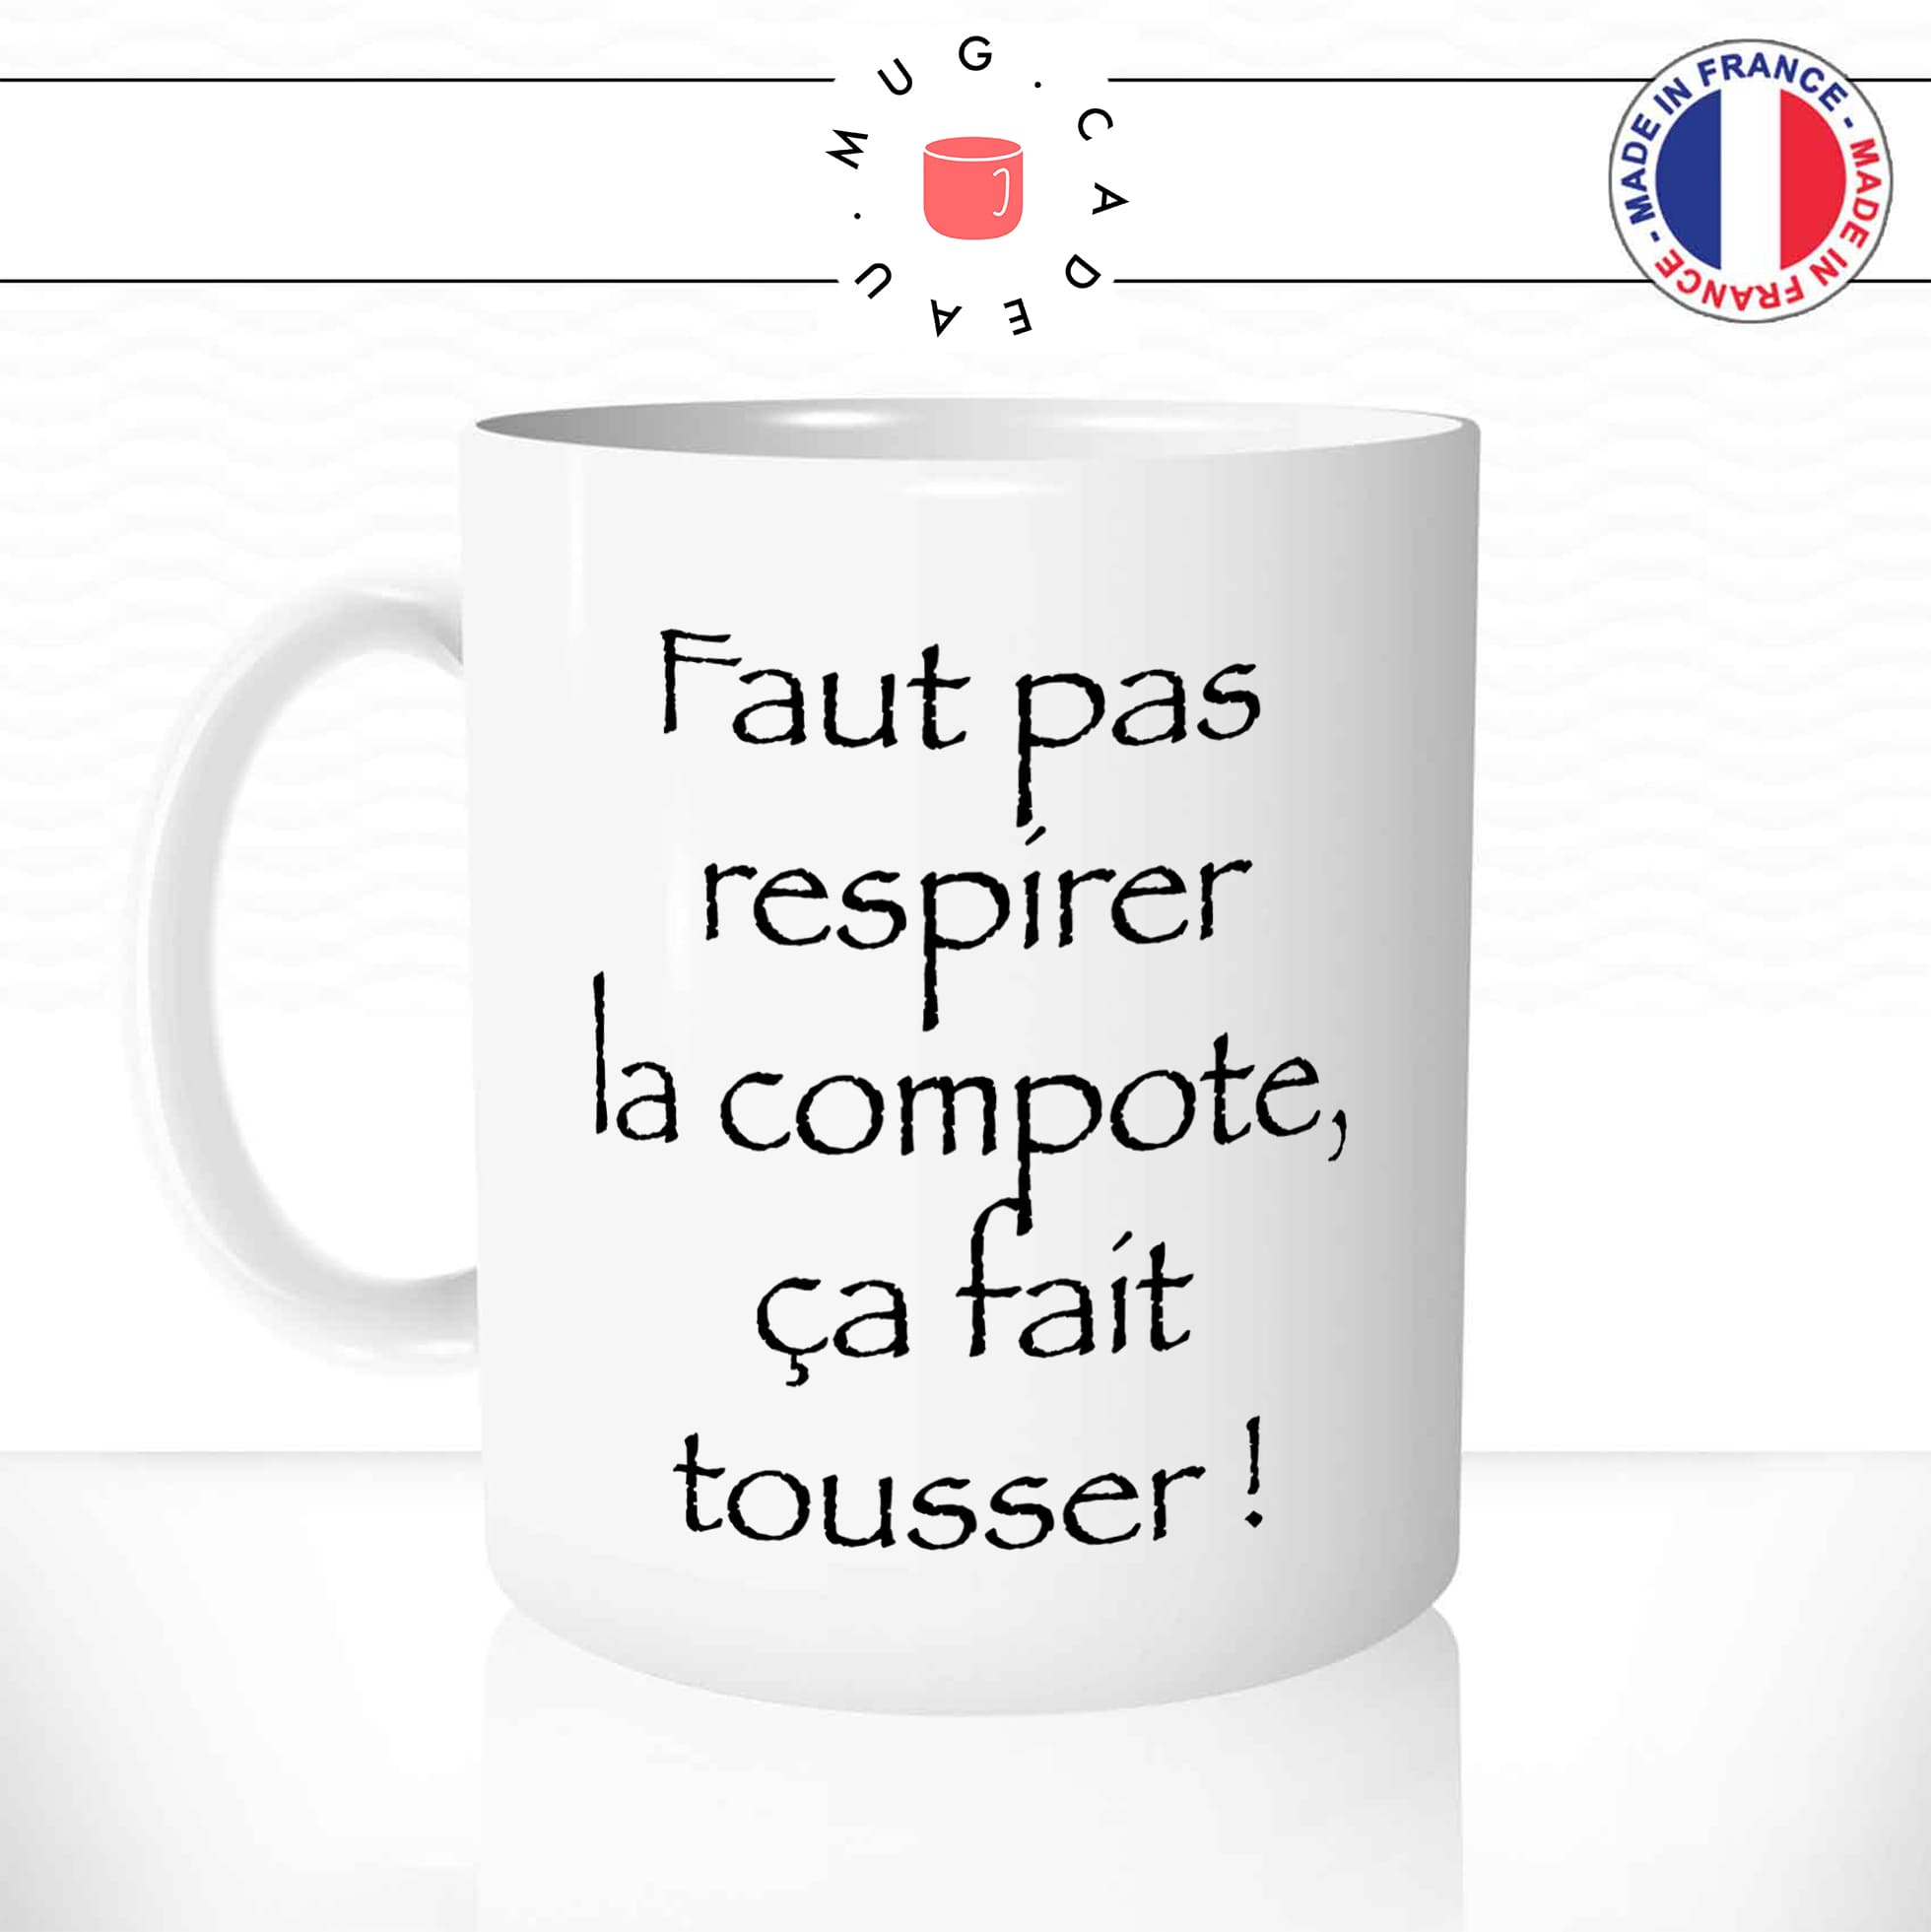 mug-tasse-Kaamelott-faut-pas-respirer-la-compote-citation-culte-francaise-humour-série-drole-fun-idée-cadeau-original-café-thé-personnalisée